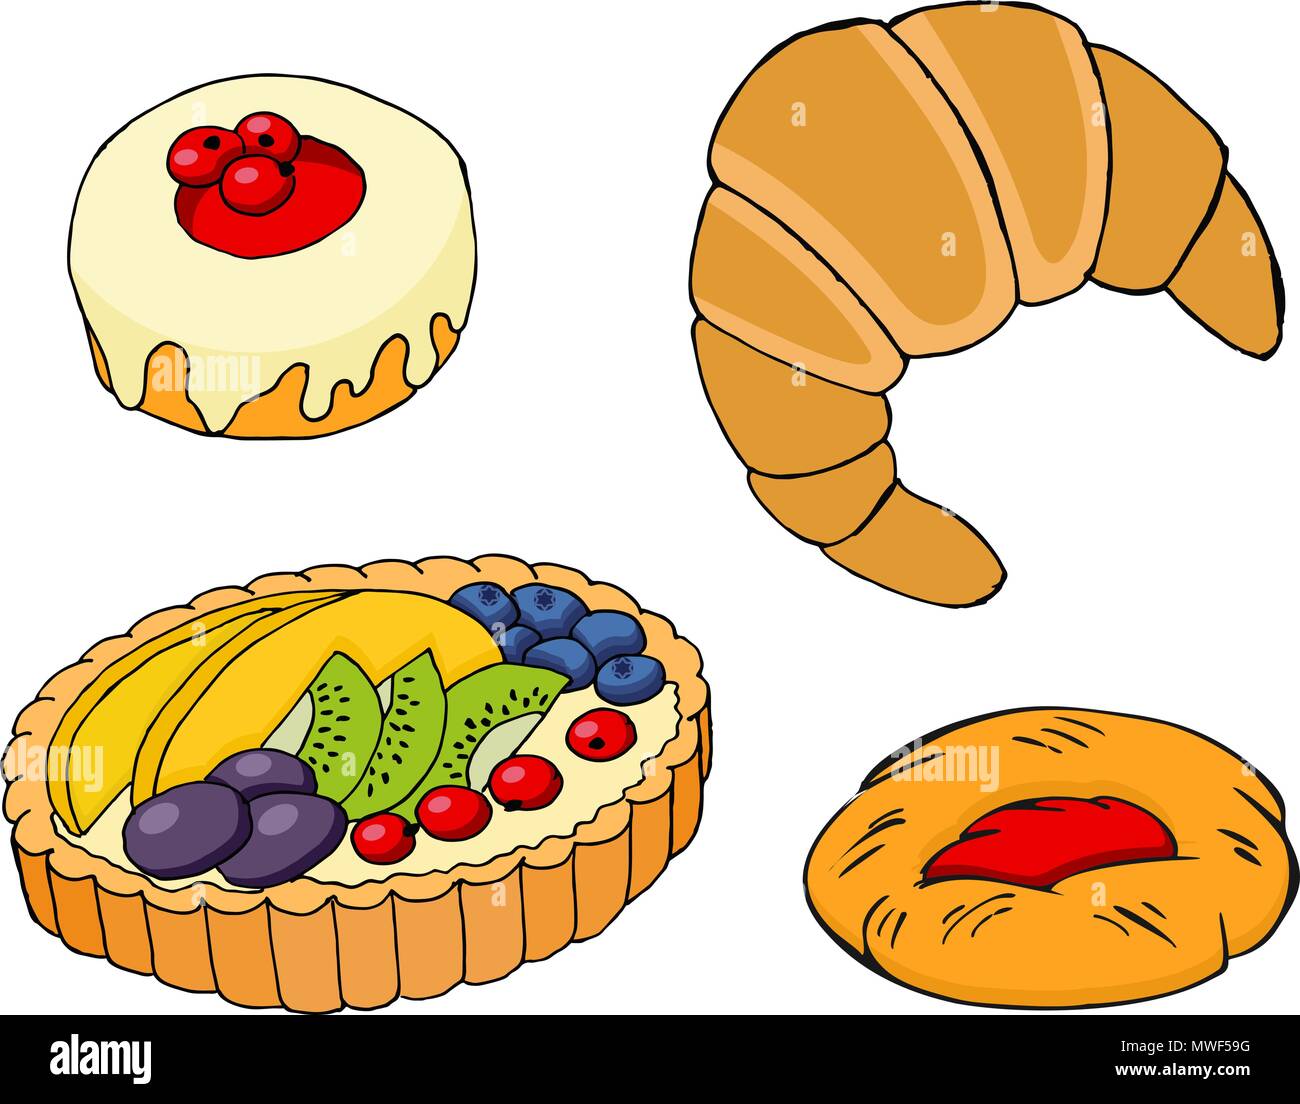 Pasticceria, Croissant, crostata di frutta, bagel e marmellata-pasta ripiena. Illustrazione Vettoriale su sfondo bianco Illustrazione Vettoriale